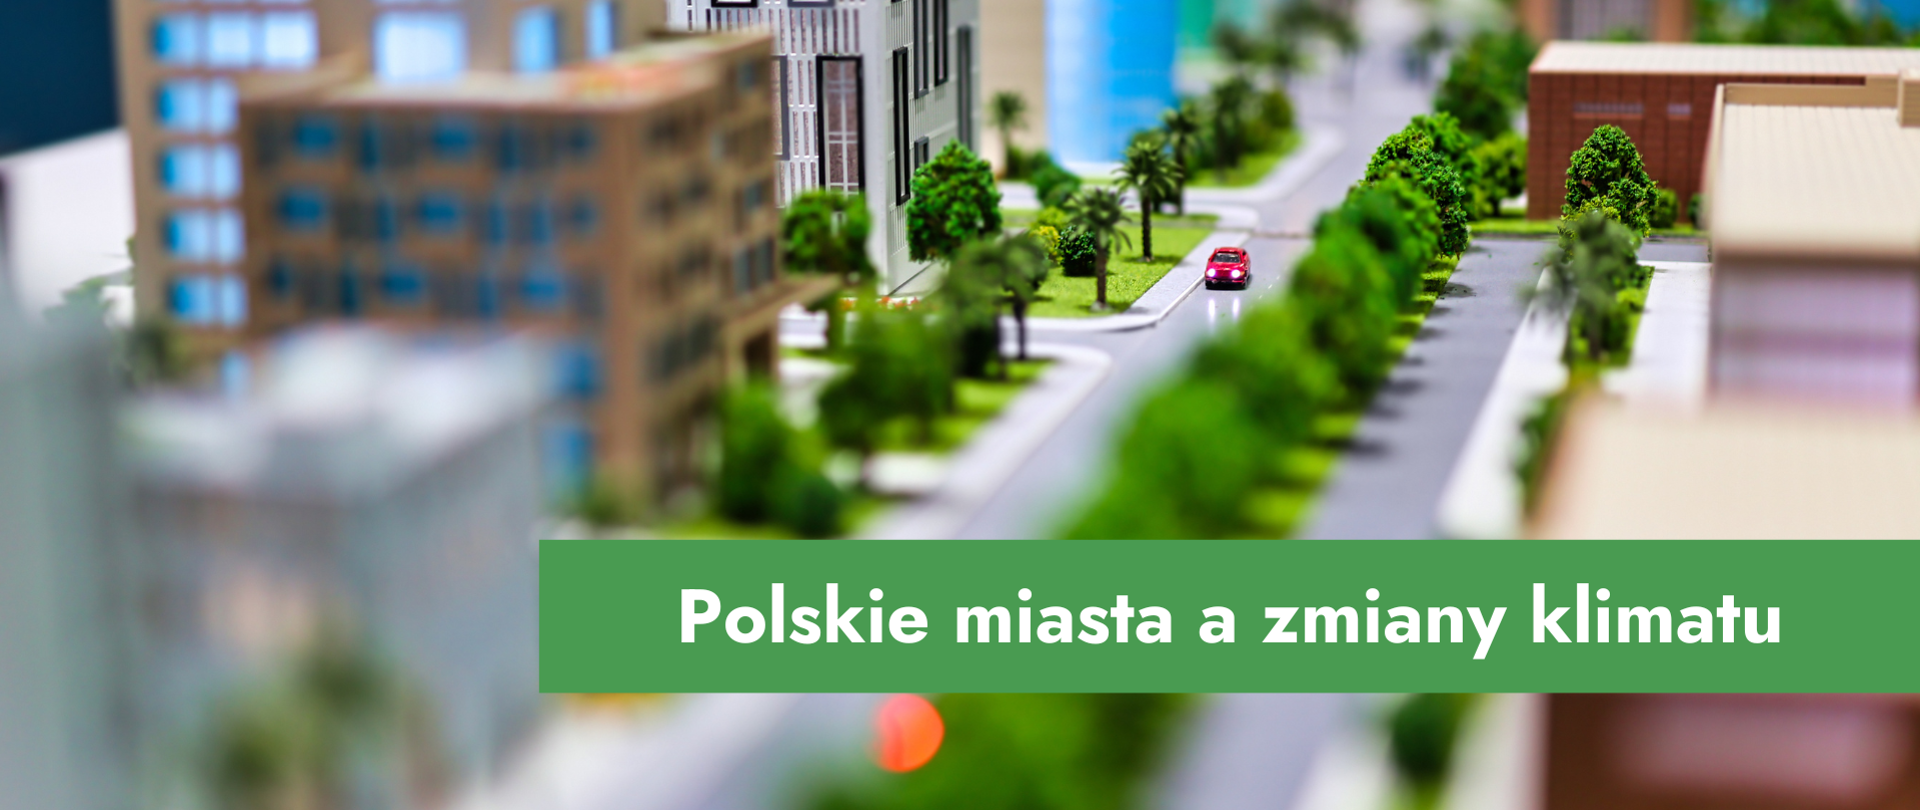 Grafika przedstawiające miasto z zieloną aleją i napis: Polskie miasta a zmiany klimatu 